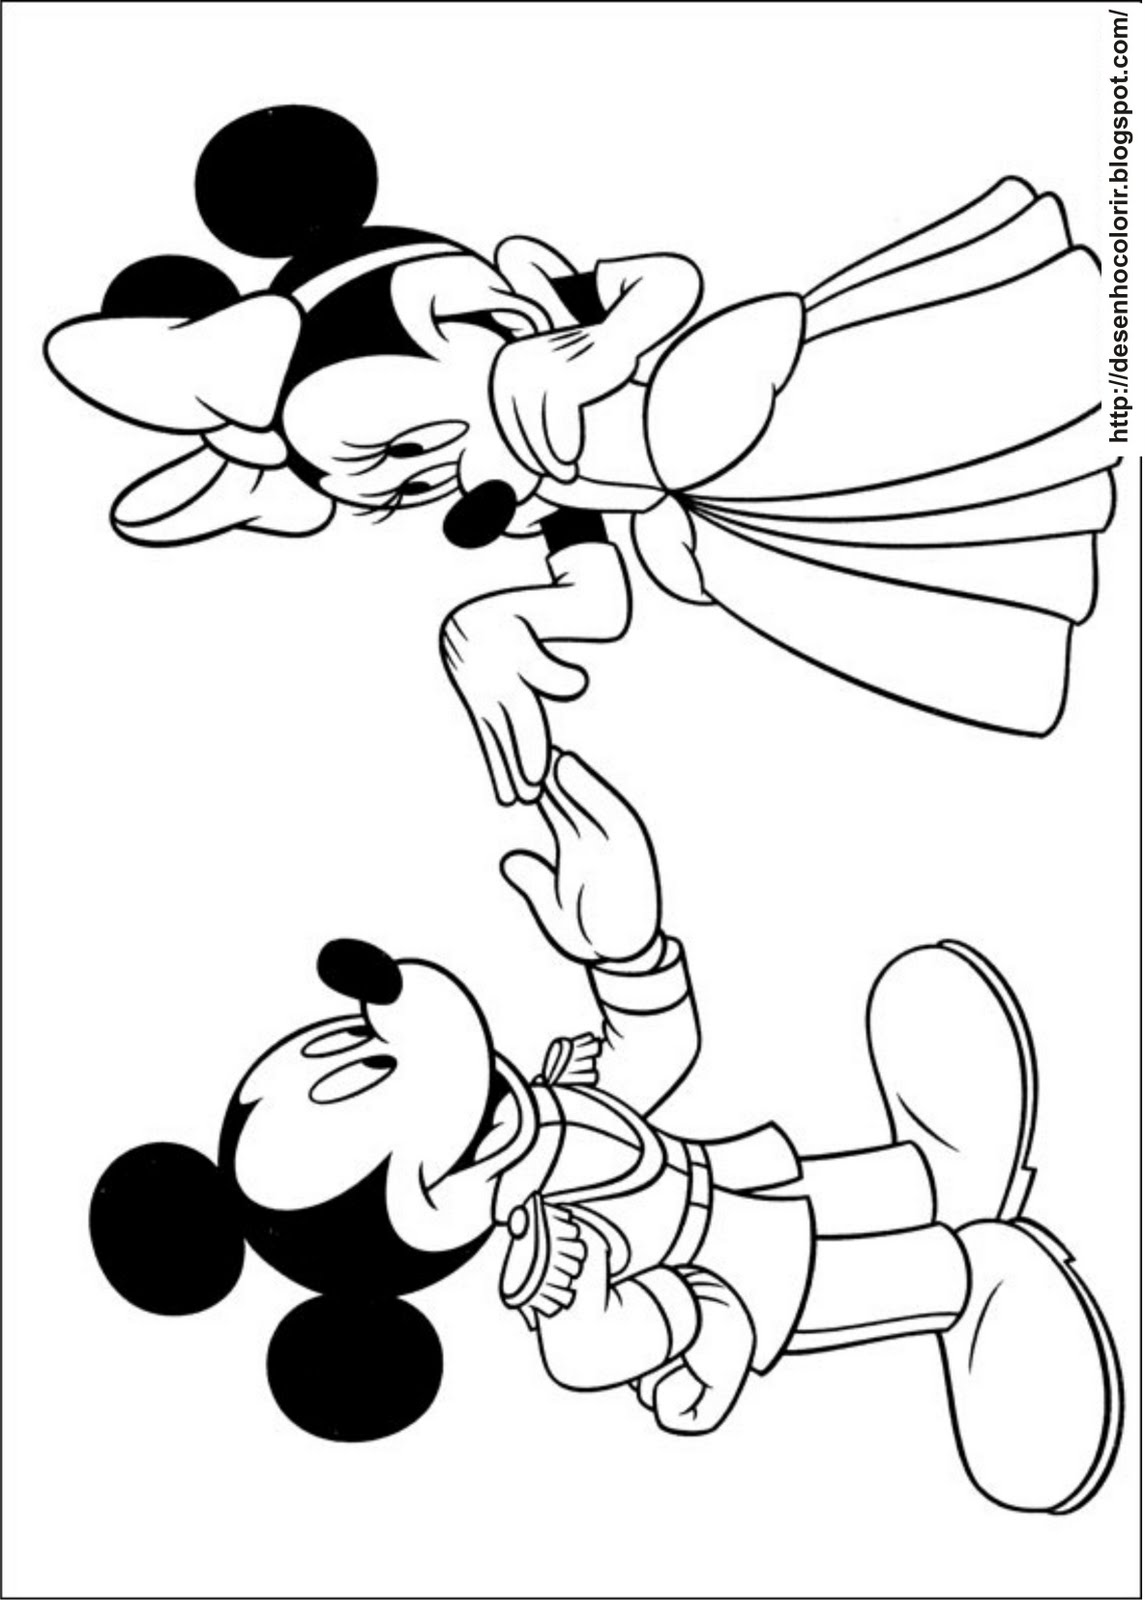 Colorindo a Magia: Mickey Mouse em Páginas Encantadoras